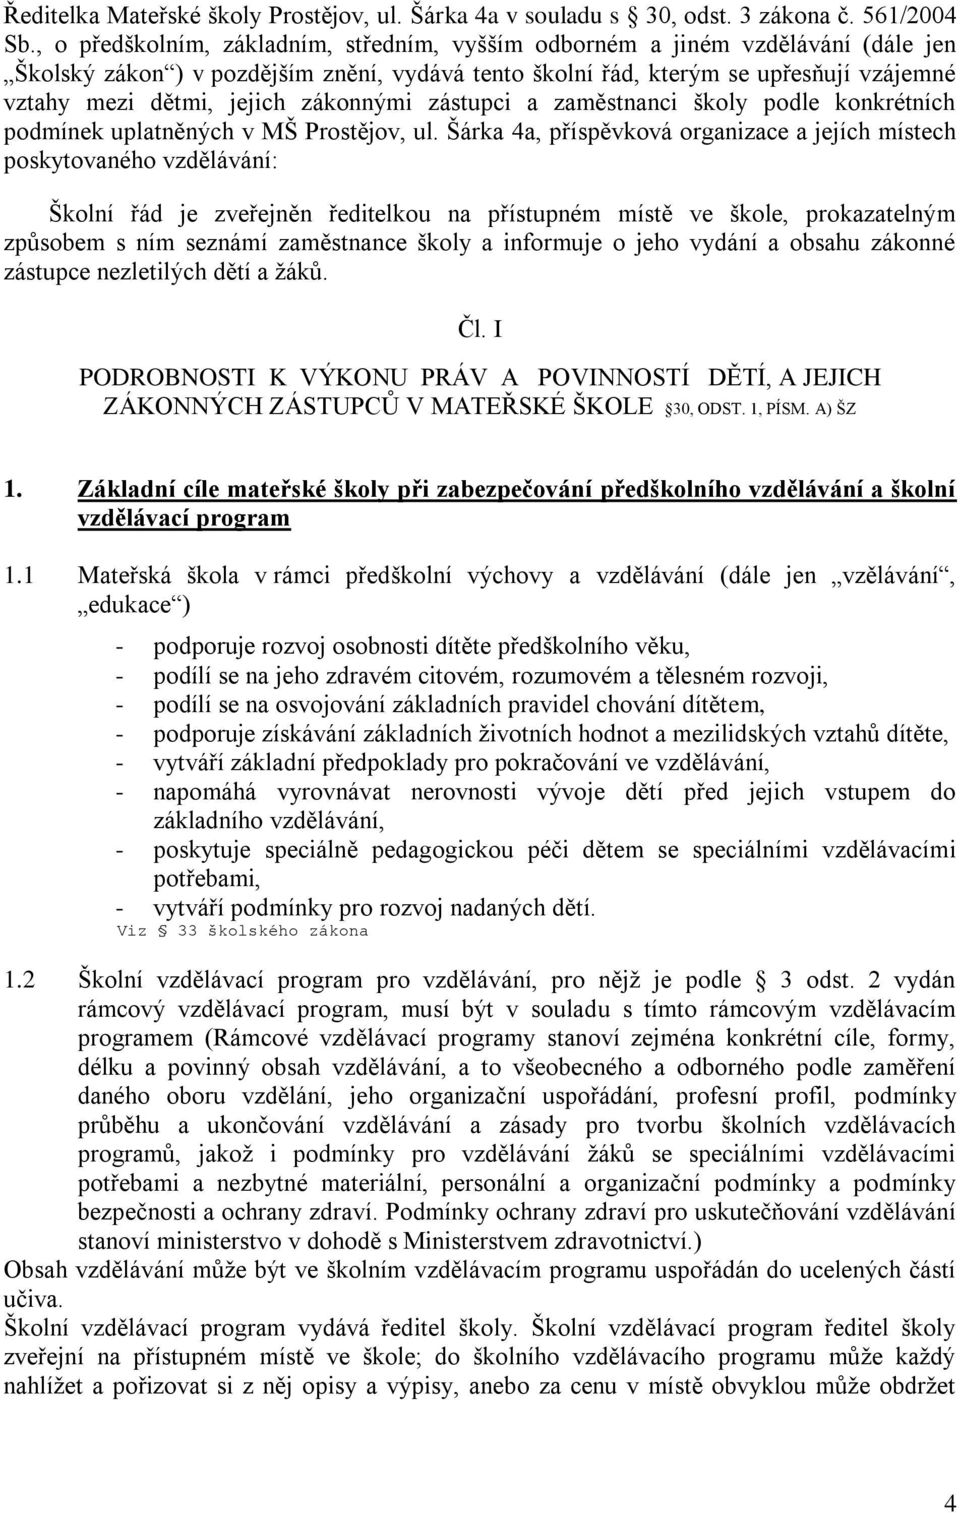 zákonnými zástupci a zaměstnanci školy podle konkrétních podmínek uplatněných v MŠ Prostějov, ul.